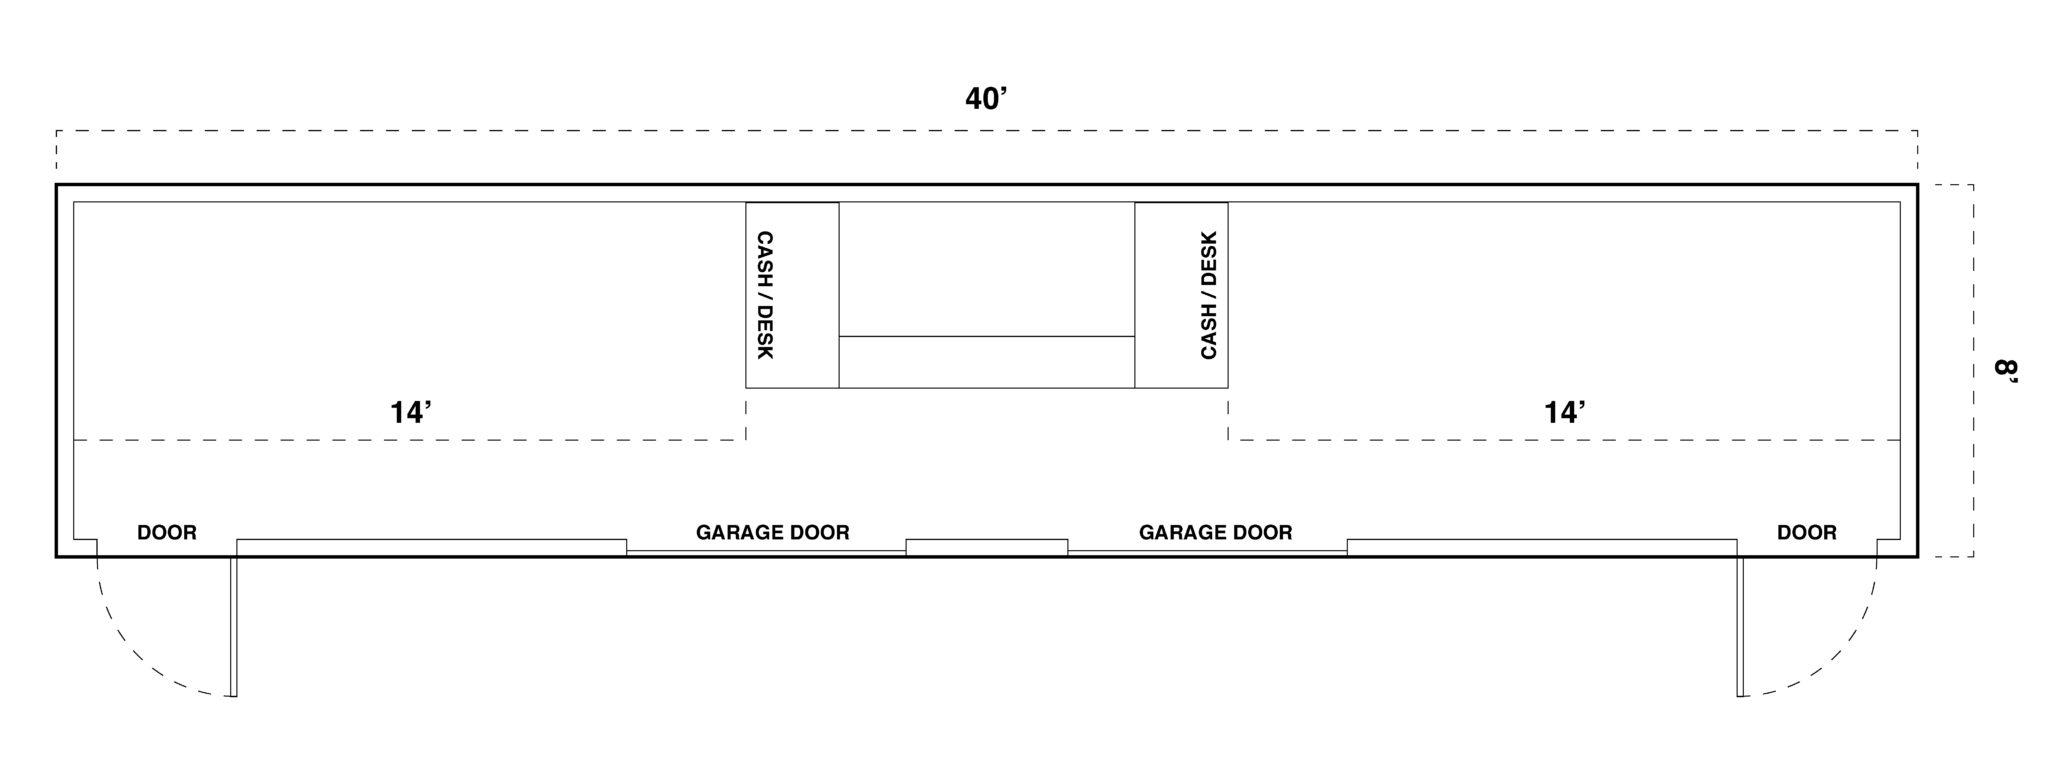 40' Retail Space diagram